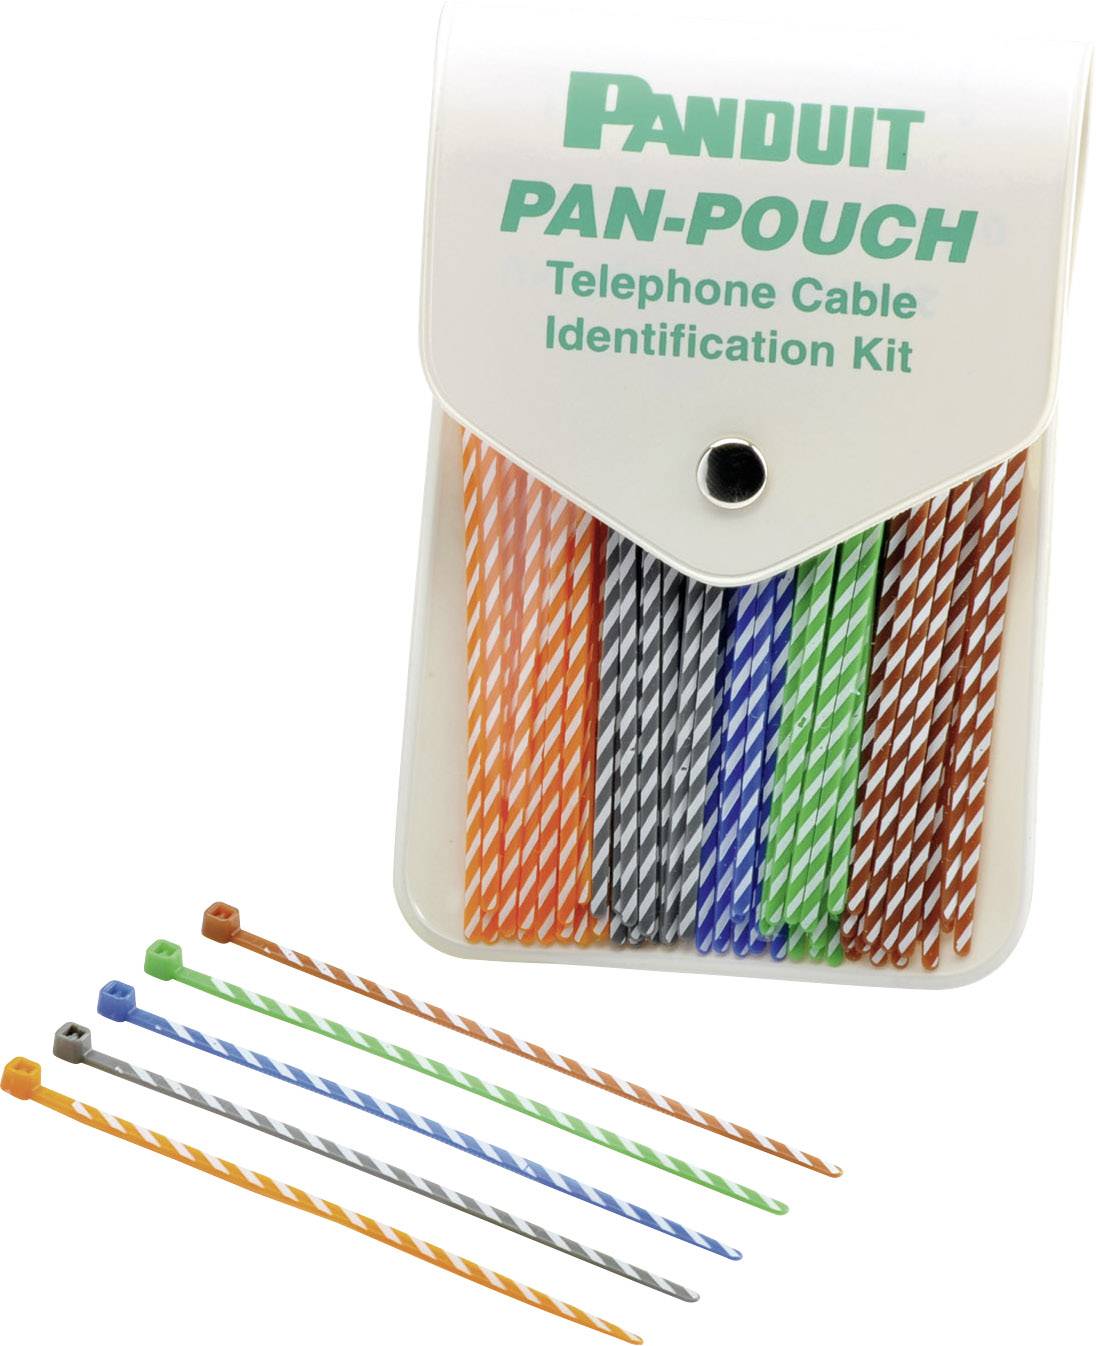 PANDUIT Kabelbinder 102 mm Blau, Orange, Grün, Braun, Grau mit farblicher Kennzeichnung Pand